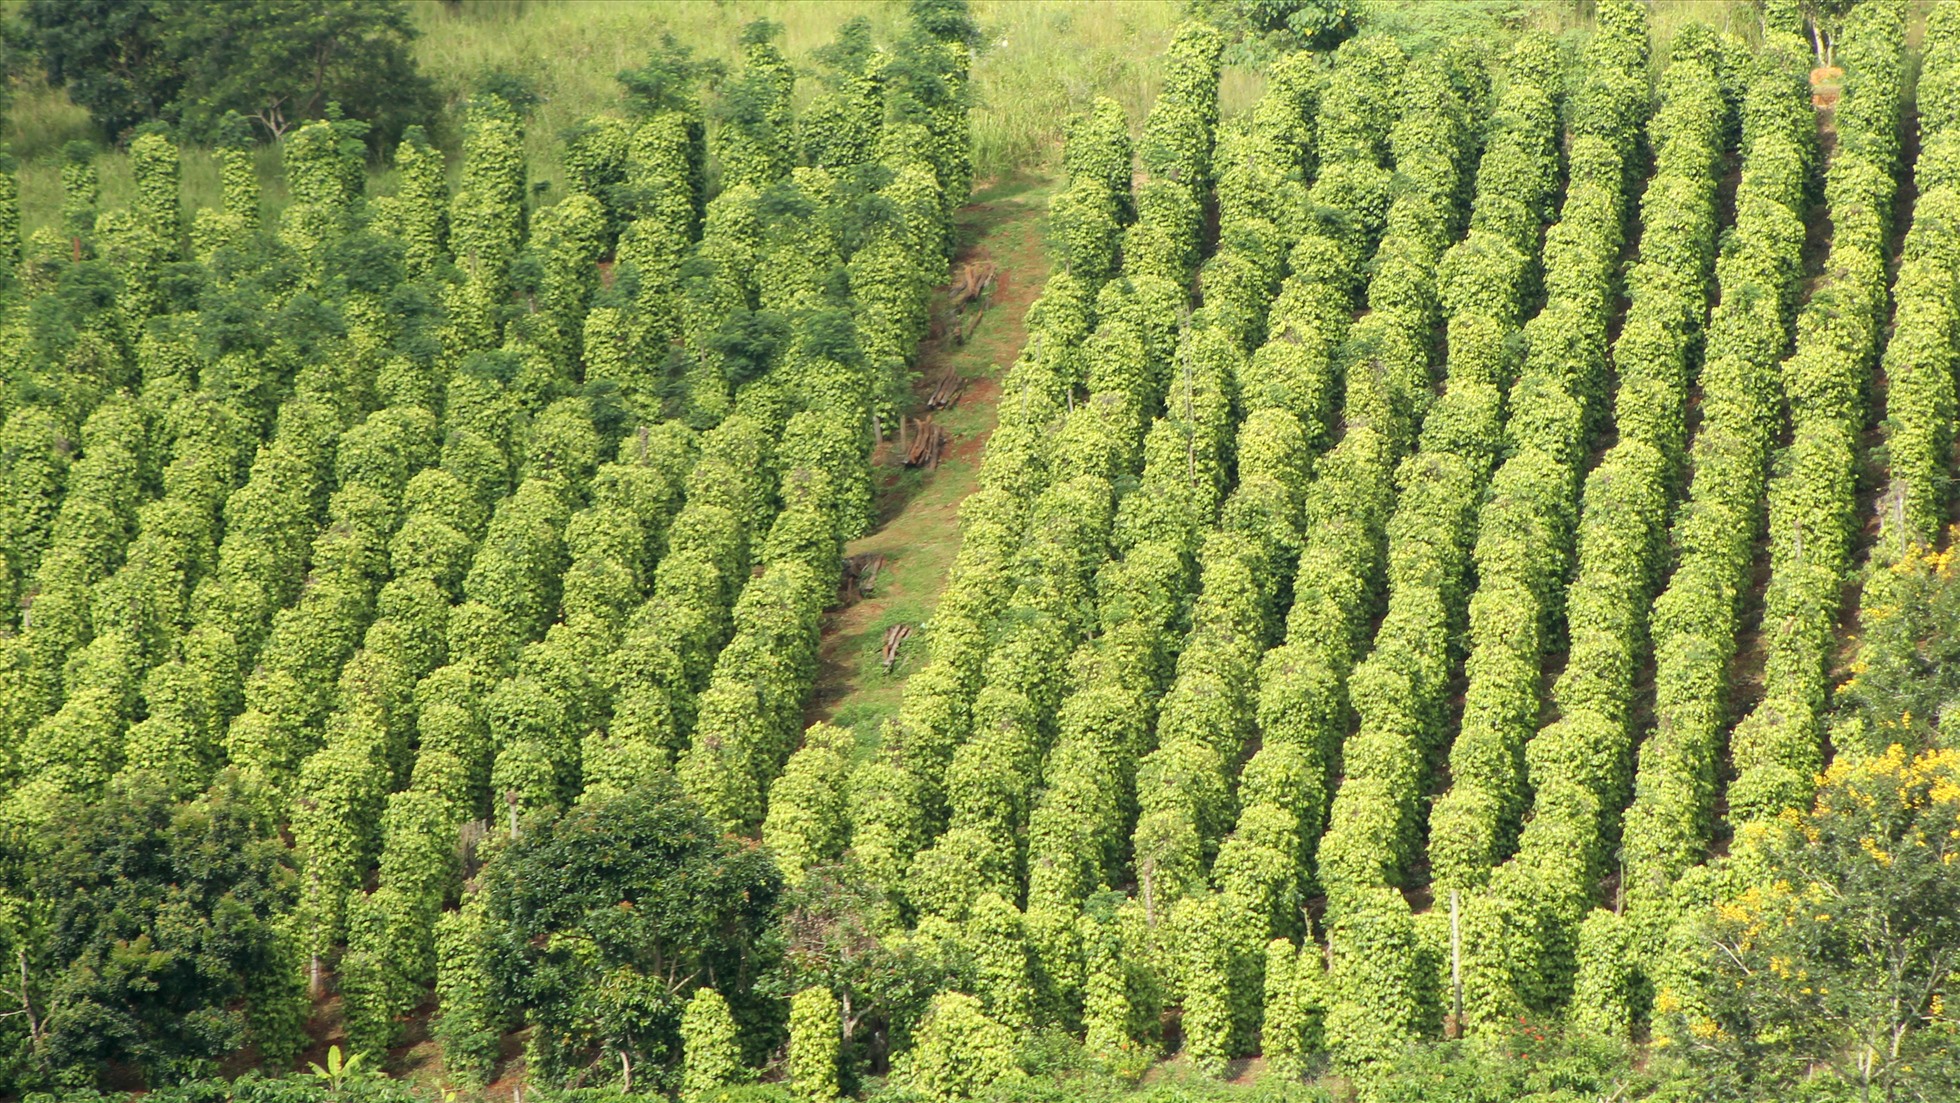 Hiện nay, toàn tỉnh Đắk Nông đang có hàng chục ngàn hecta cây hồ tiêu, cà phê, điều... trồng sai vị trí nên không phù hợp với điều kiện thổ nhưỡng, khí hậu. Ảnh: Phan Tuấn